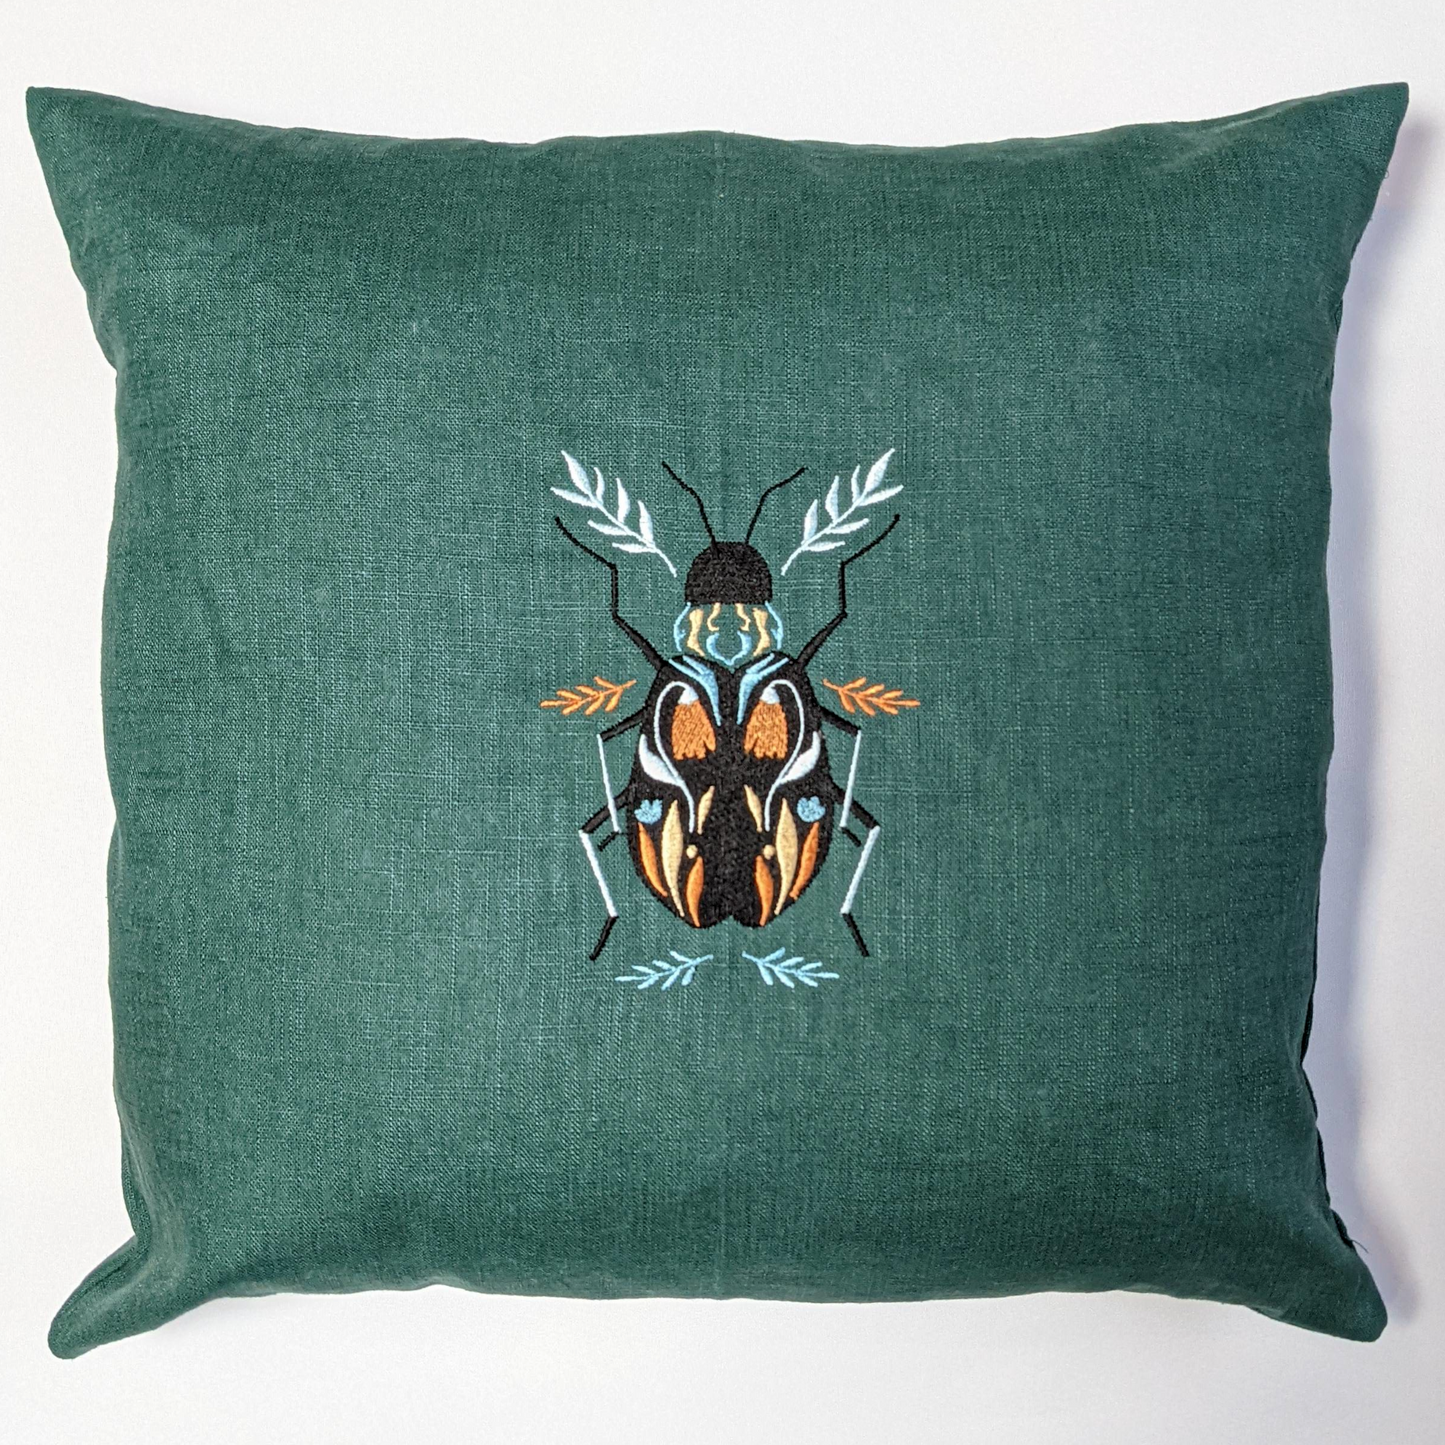 Bug pillow